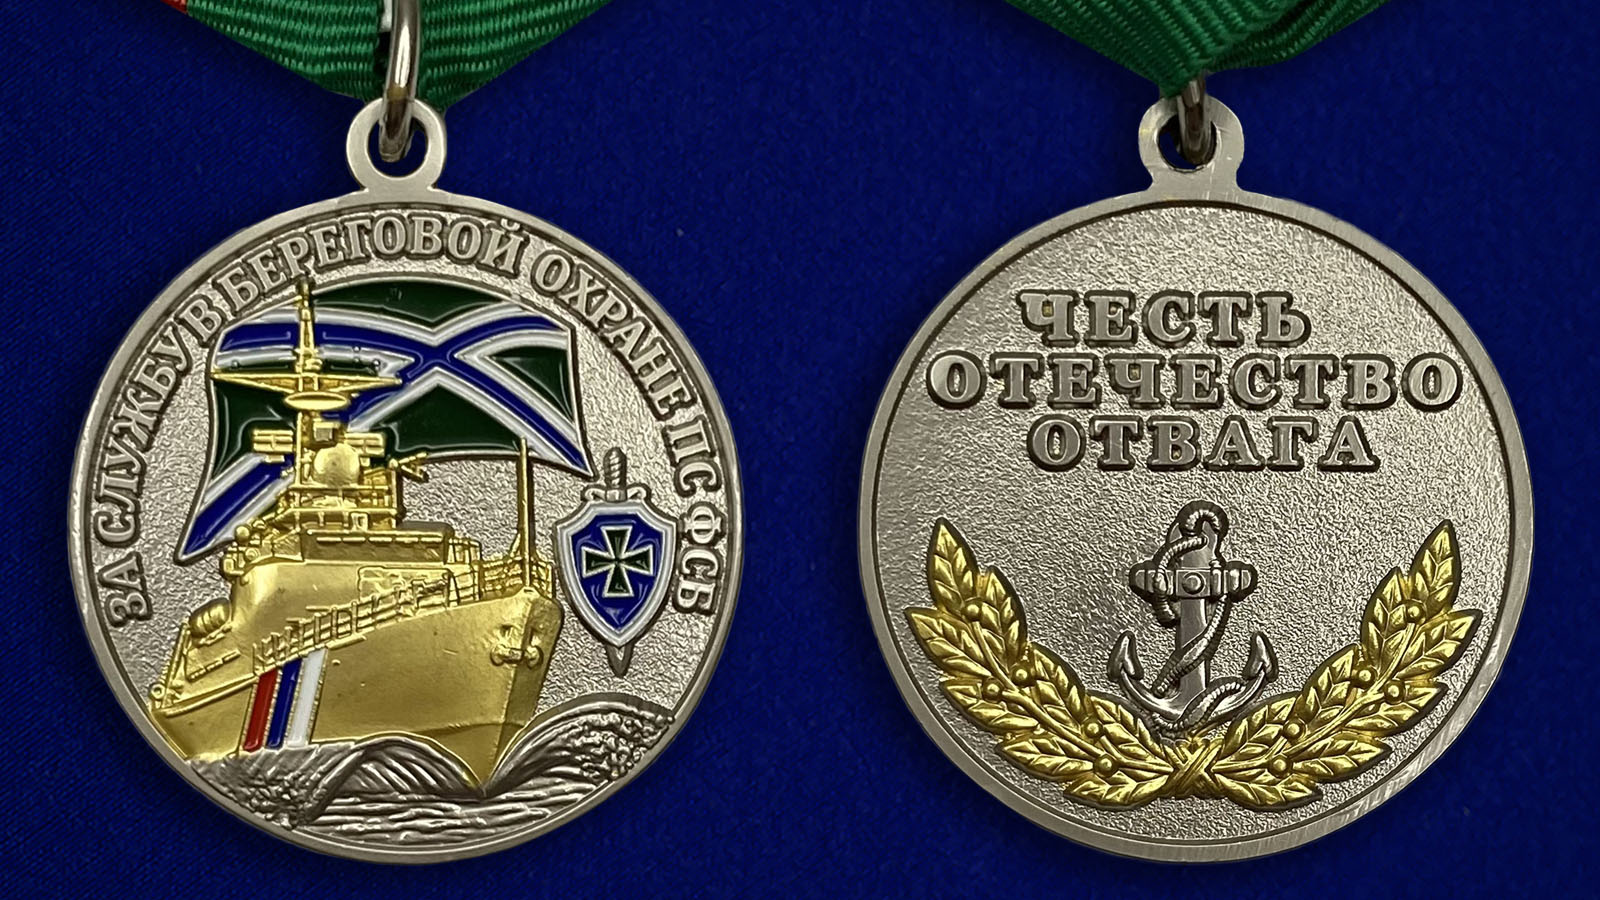 Купить медаль "За службу в береговой охране" ПС ФСБ